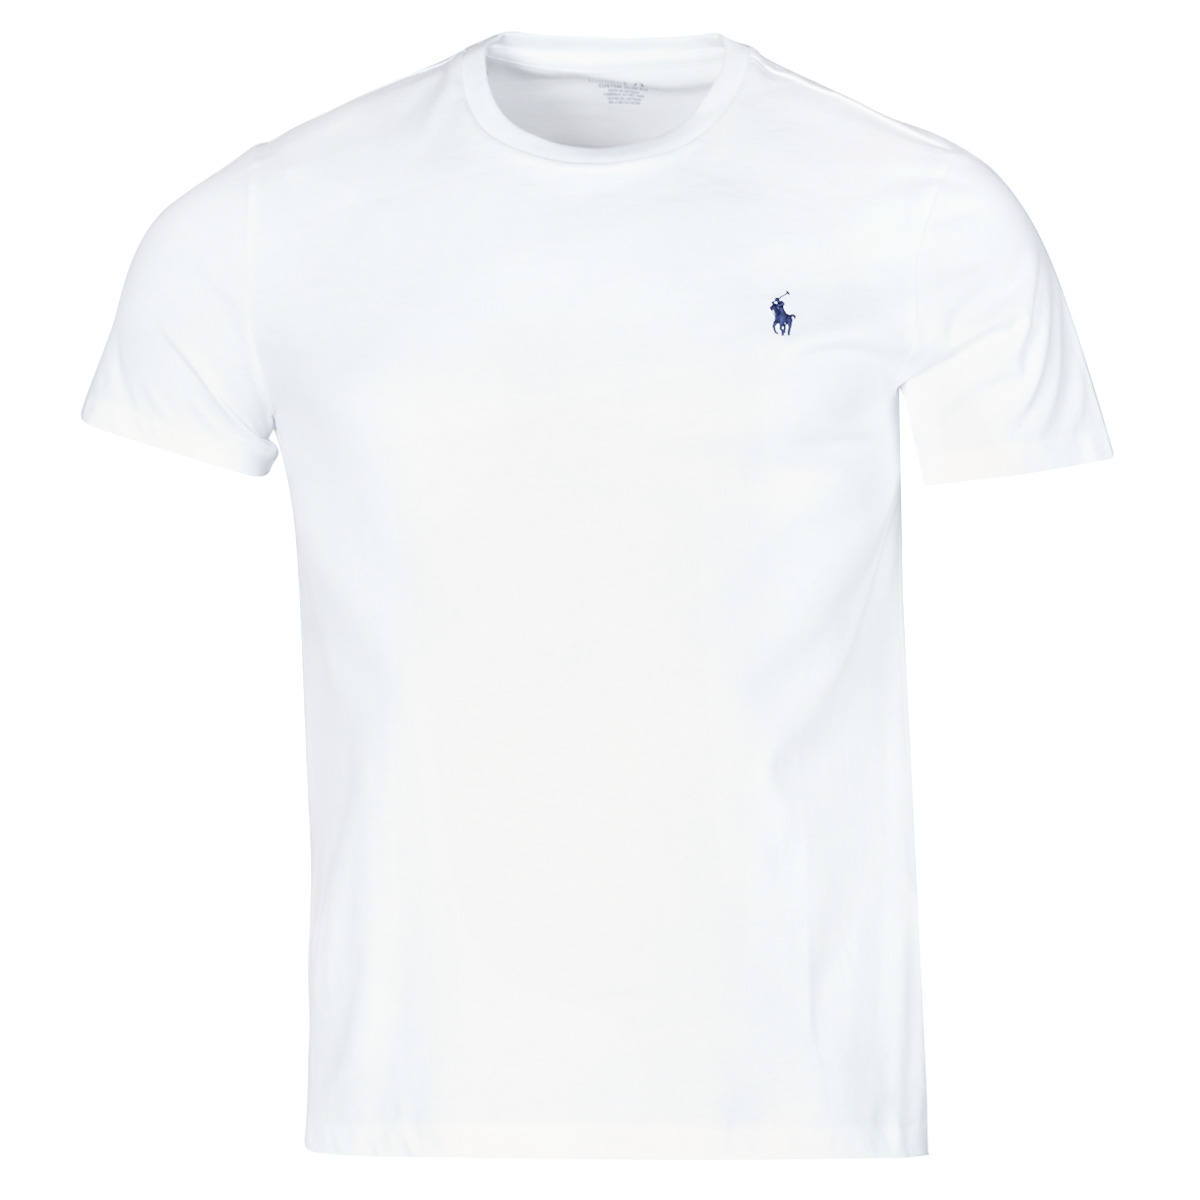 Vêtements Homme Laura Pique Polo Shirt Dress T-SHIRT AJUSTE EN COTON Blanc